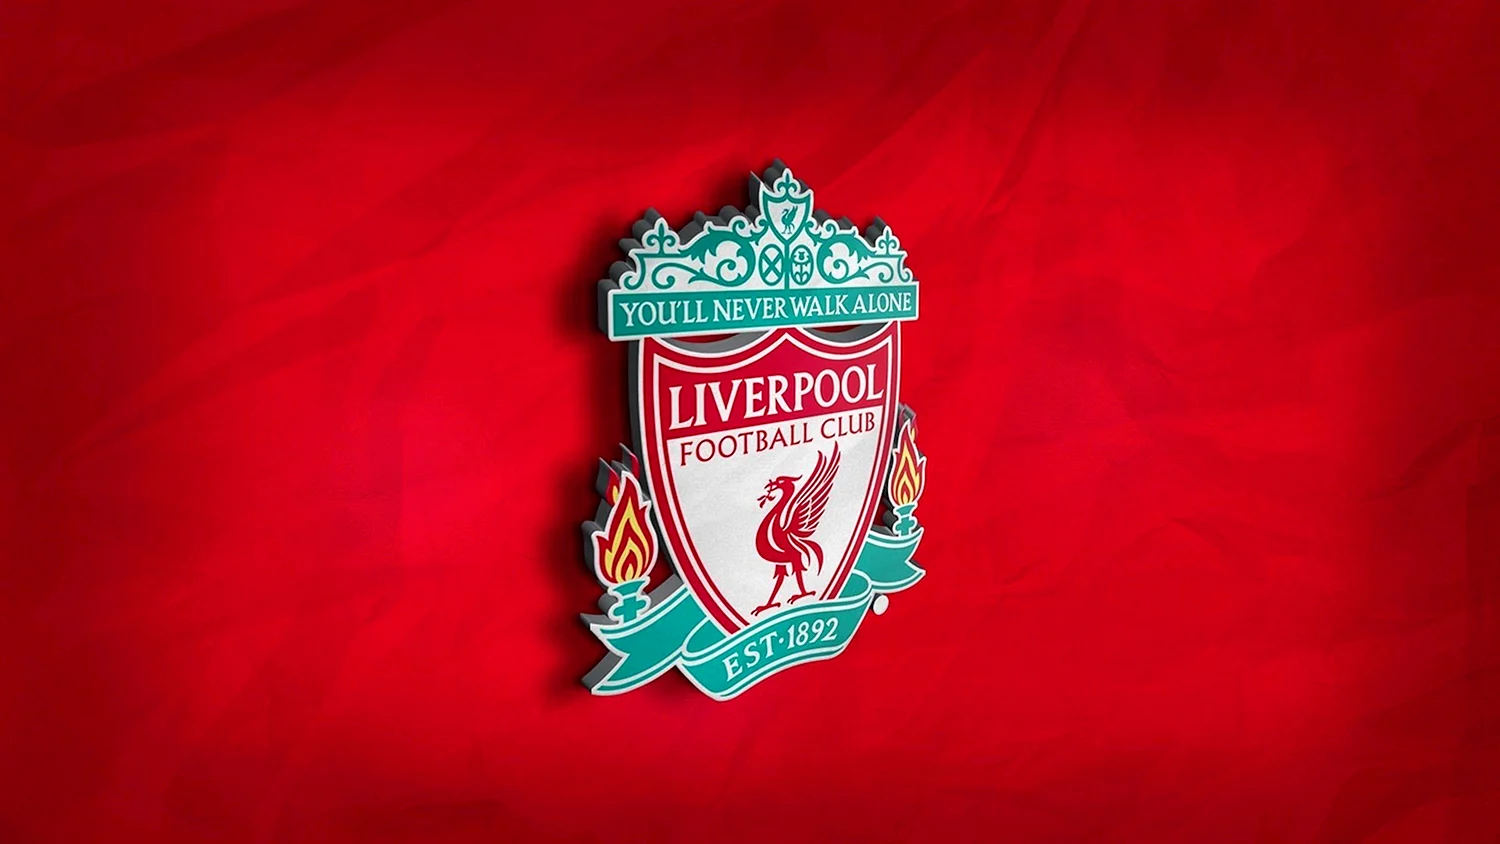 Ливерпуль футбольный клуб эмблема логотип